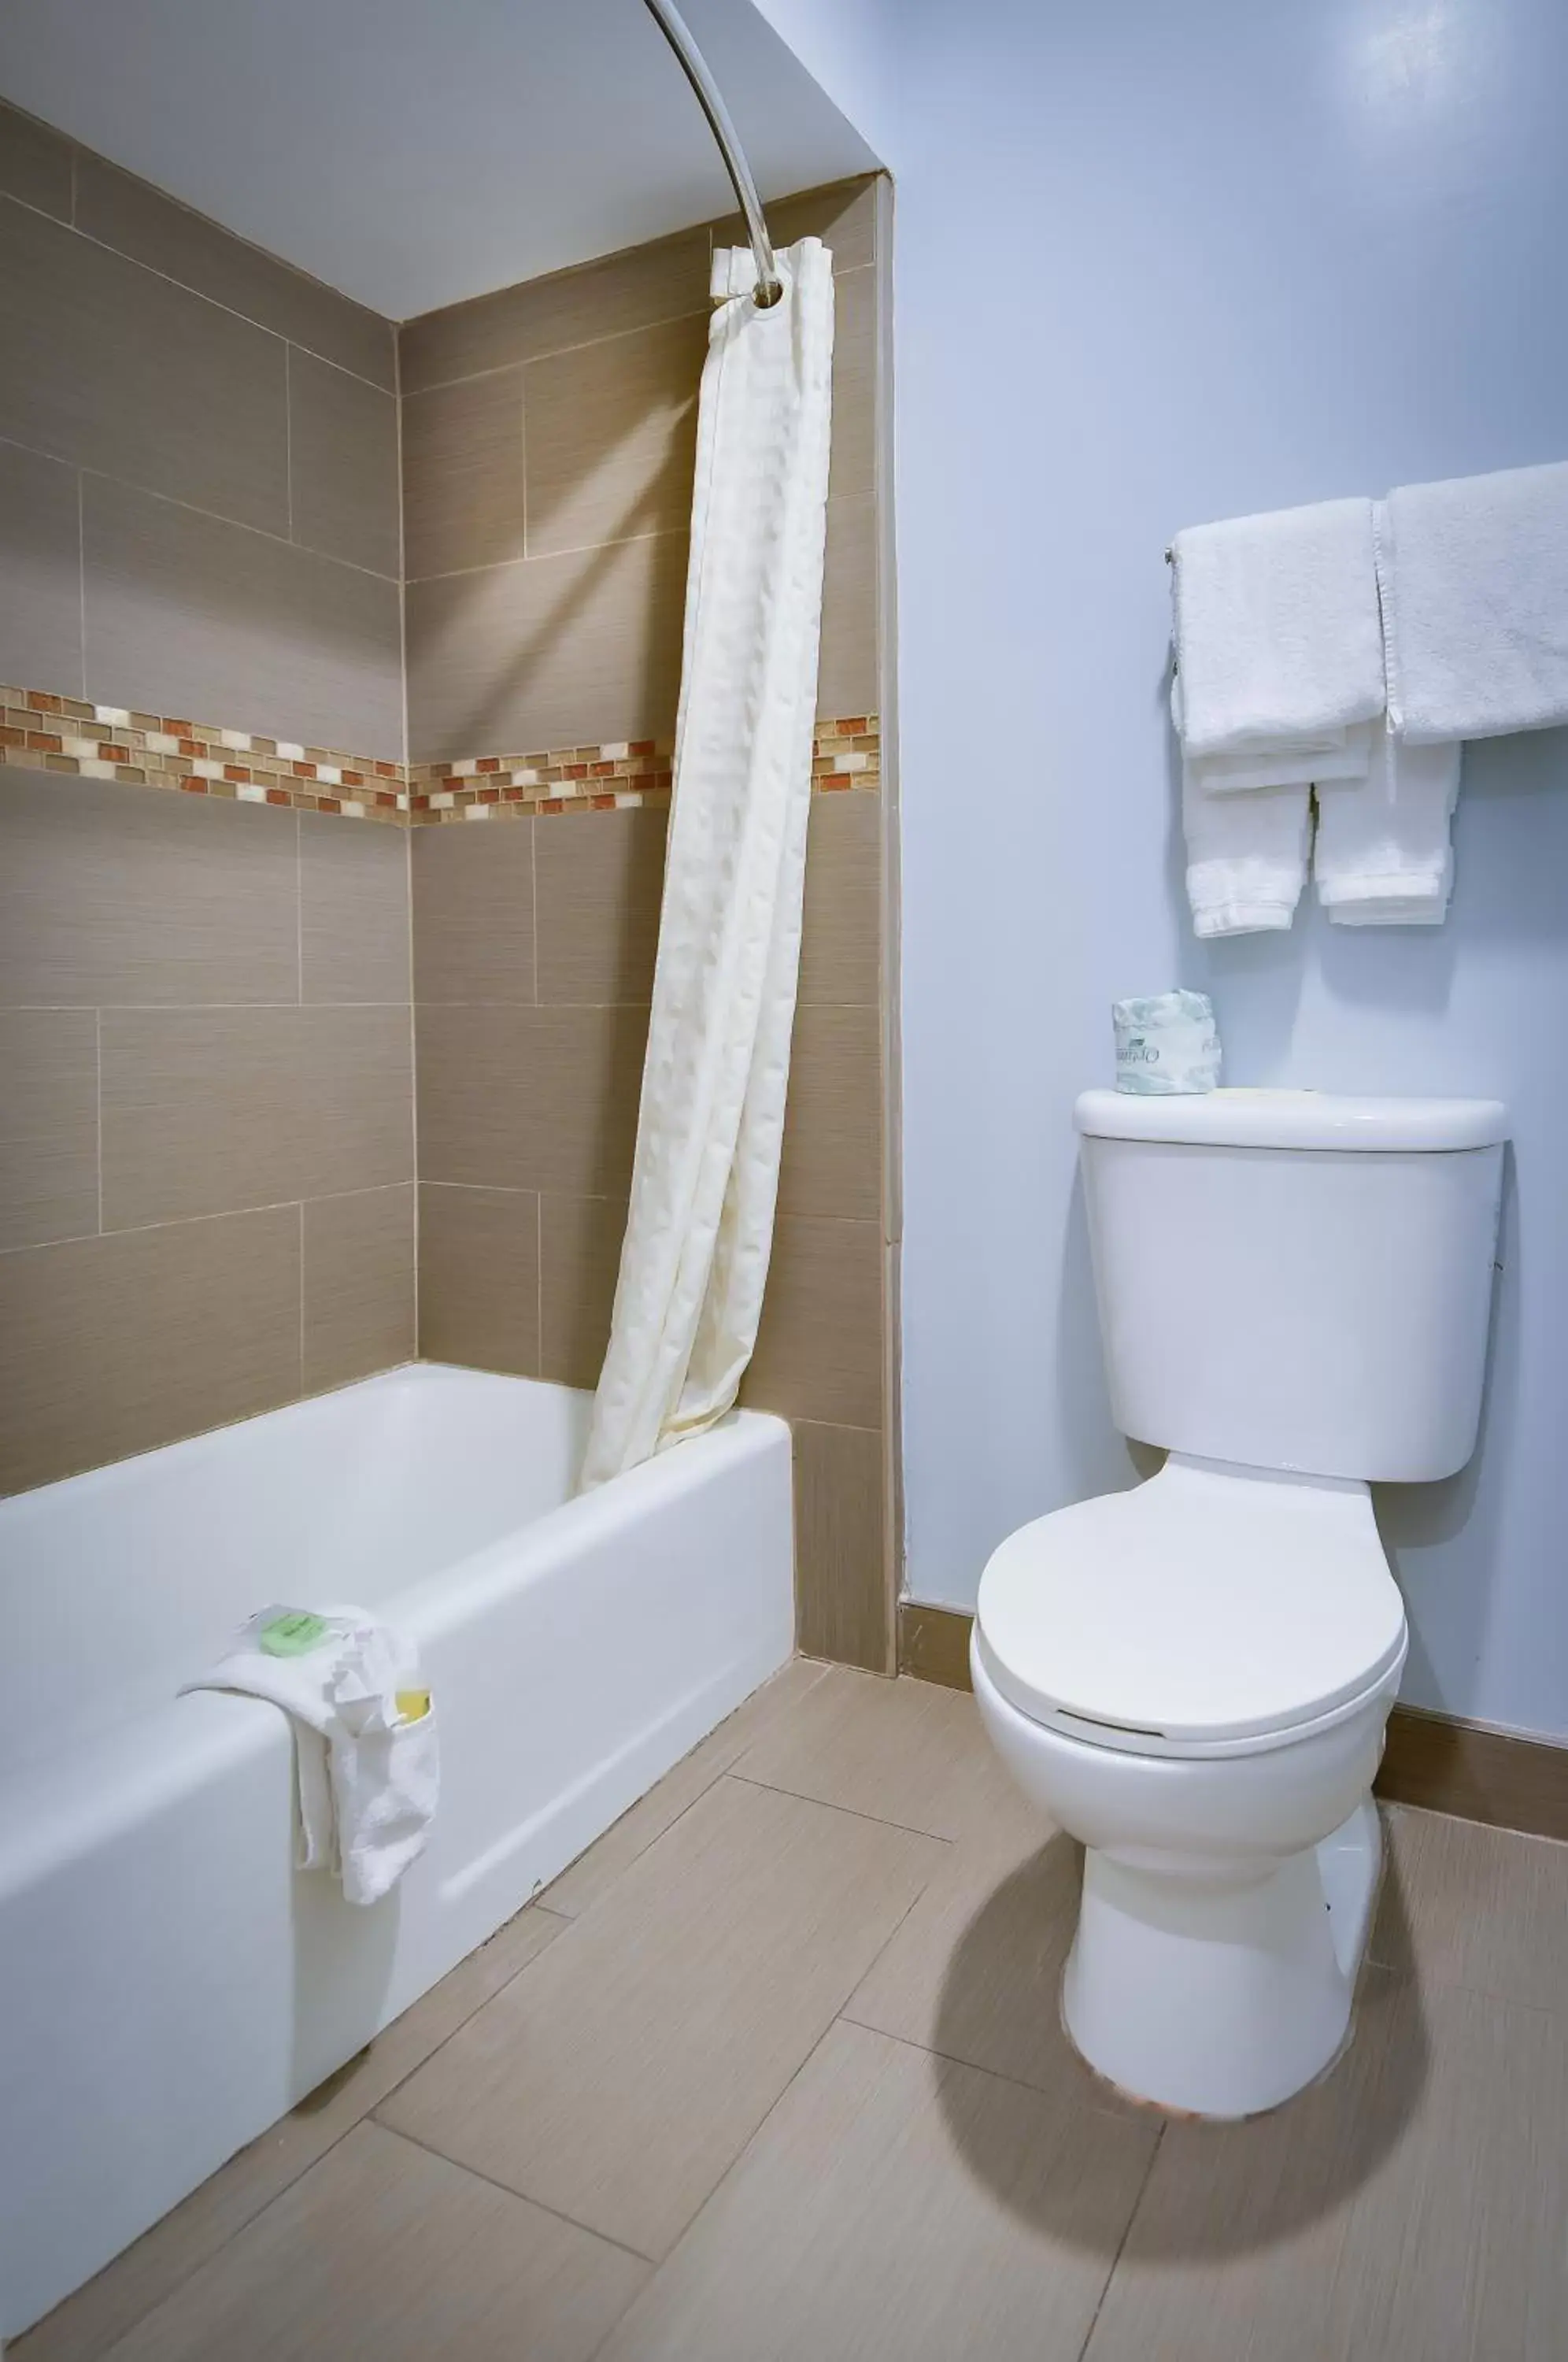 Toilet, Bathroom in Vagabond Inn Sunnyvale